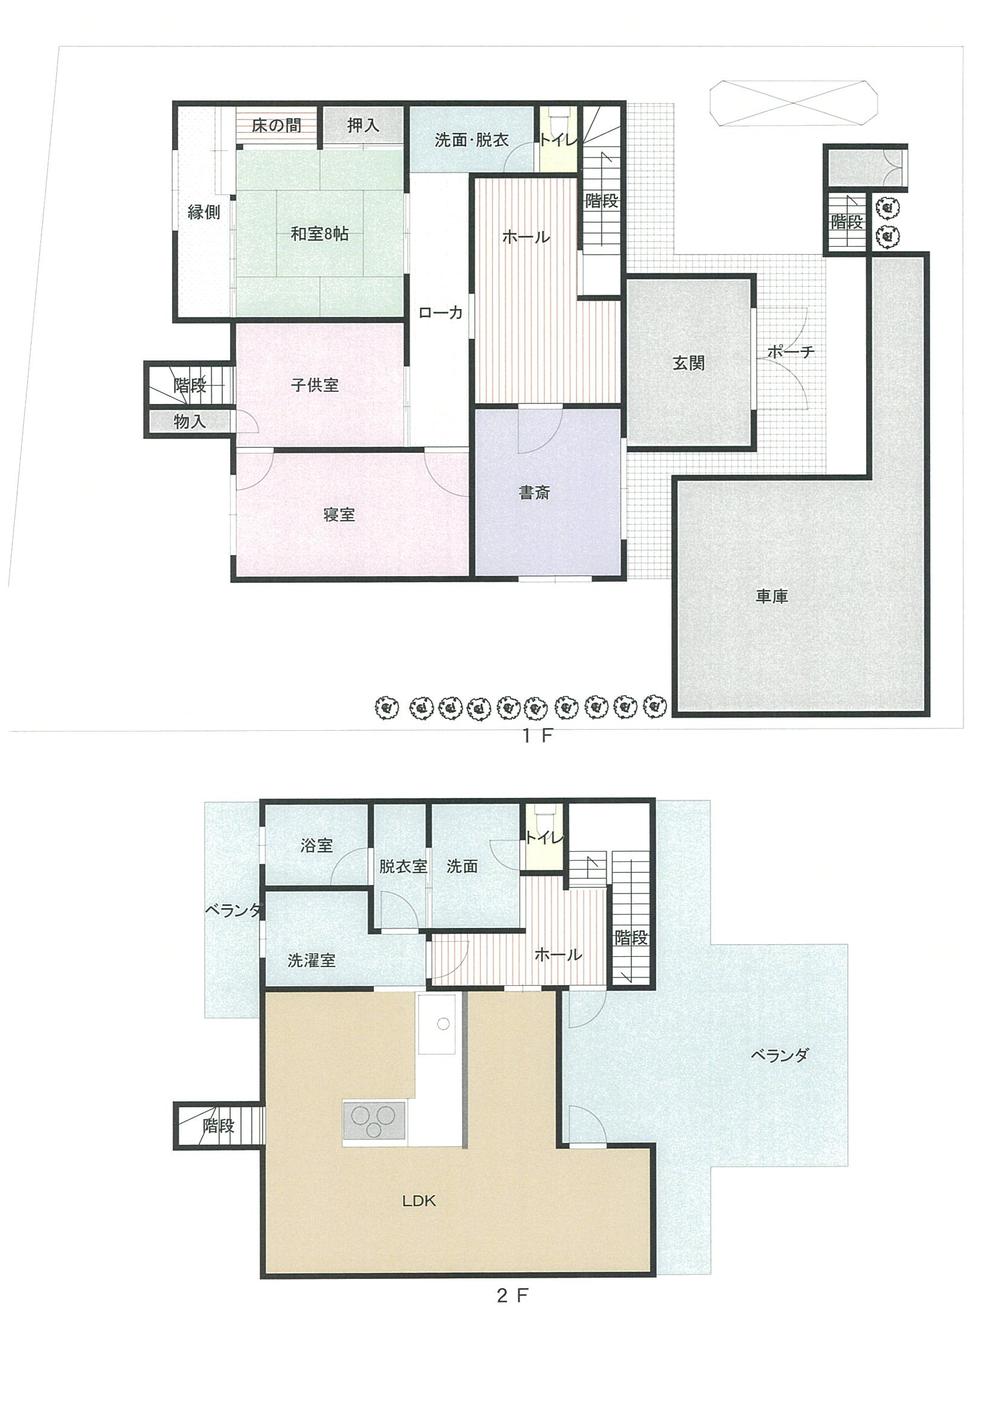 Floor plan. 49,800,000 yen, 4LDK, Land area 430 sq m , Building area 220.78 sq m floor plan